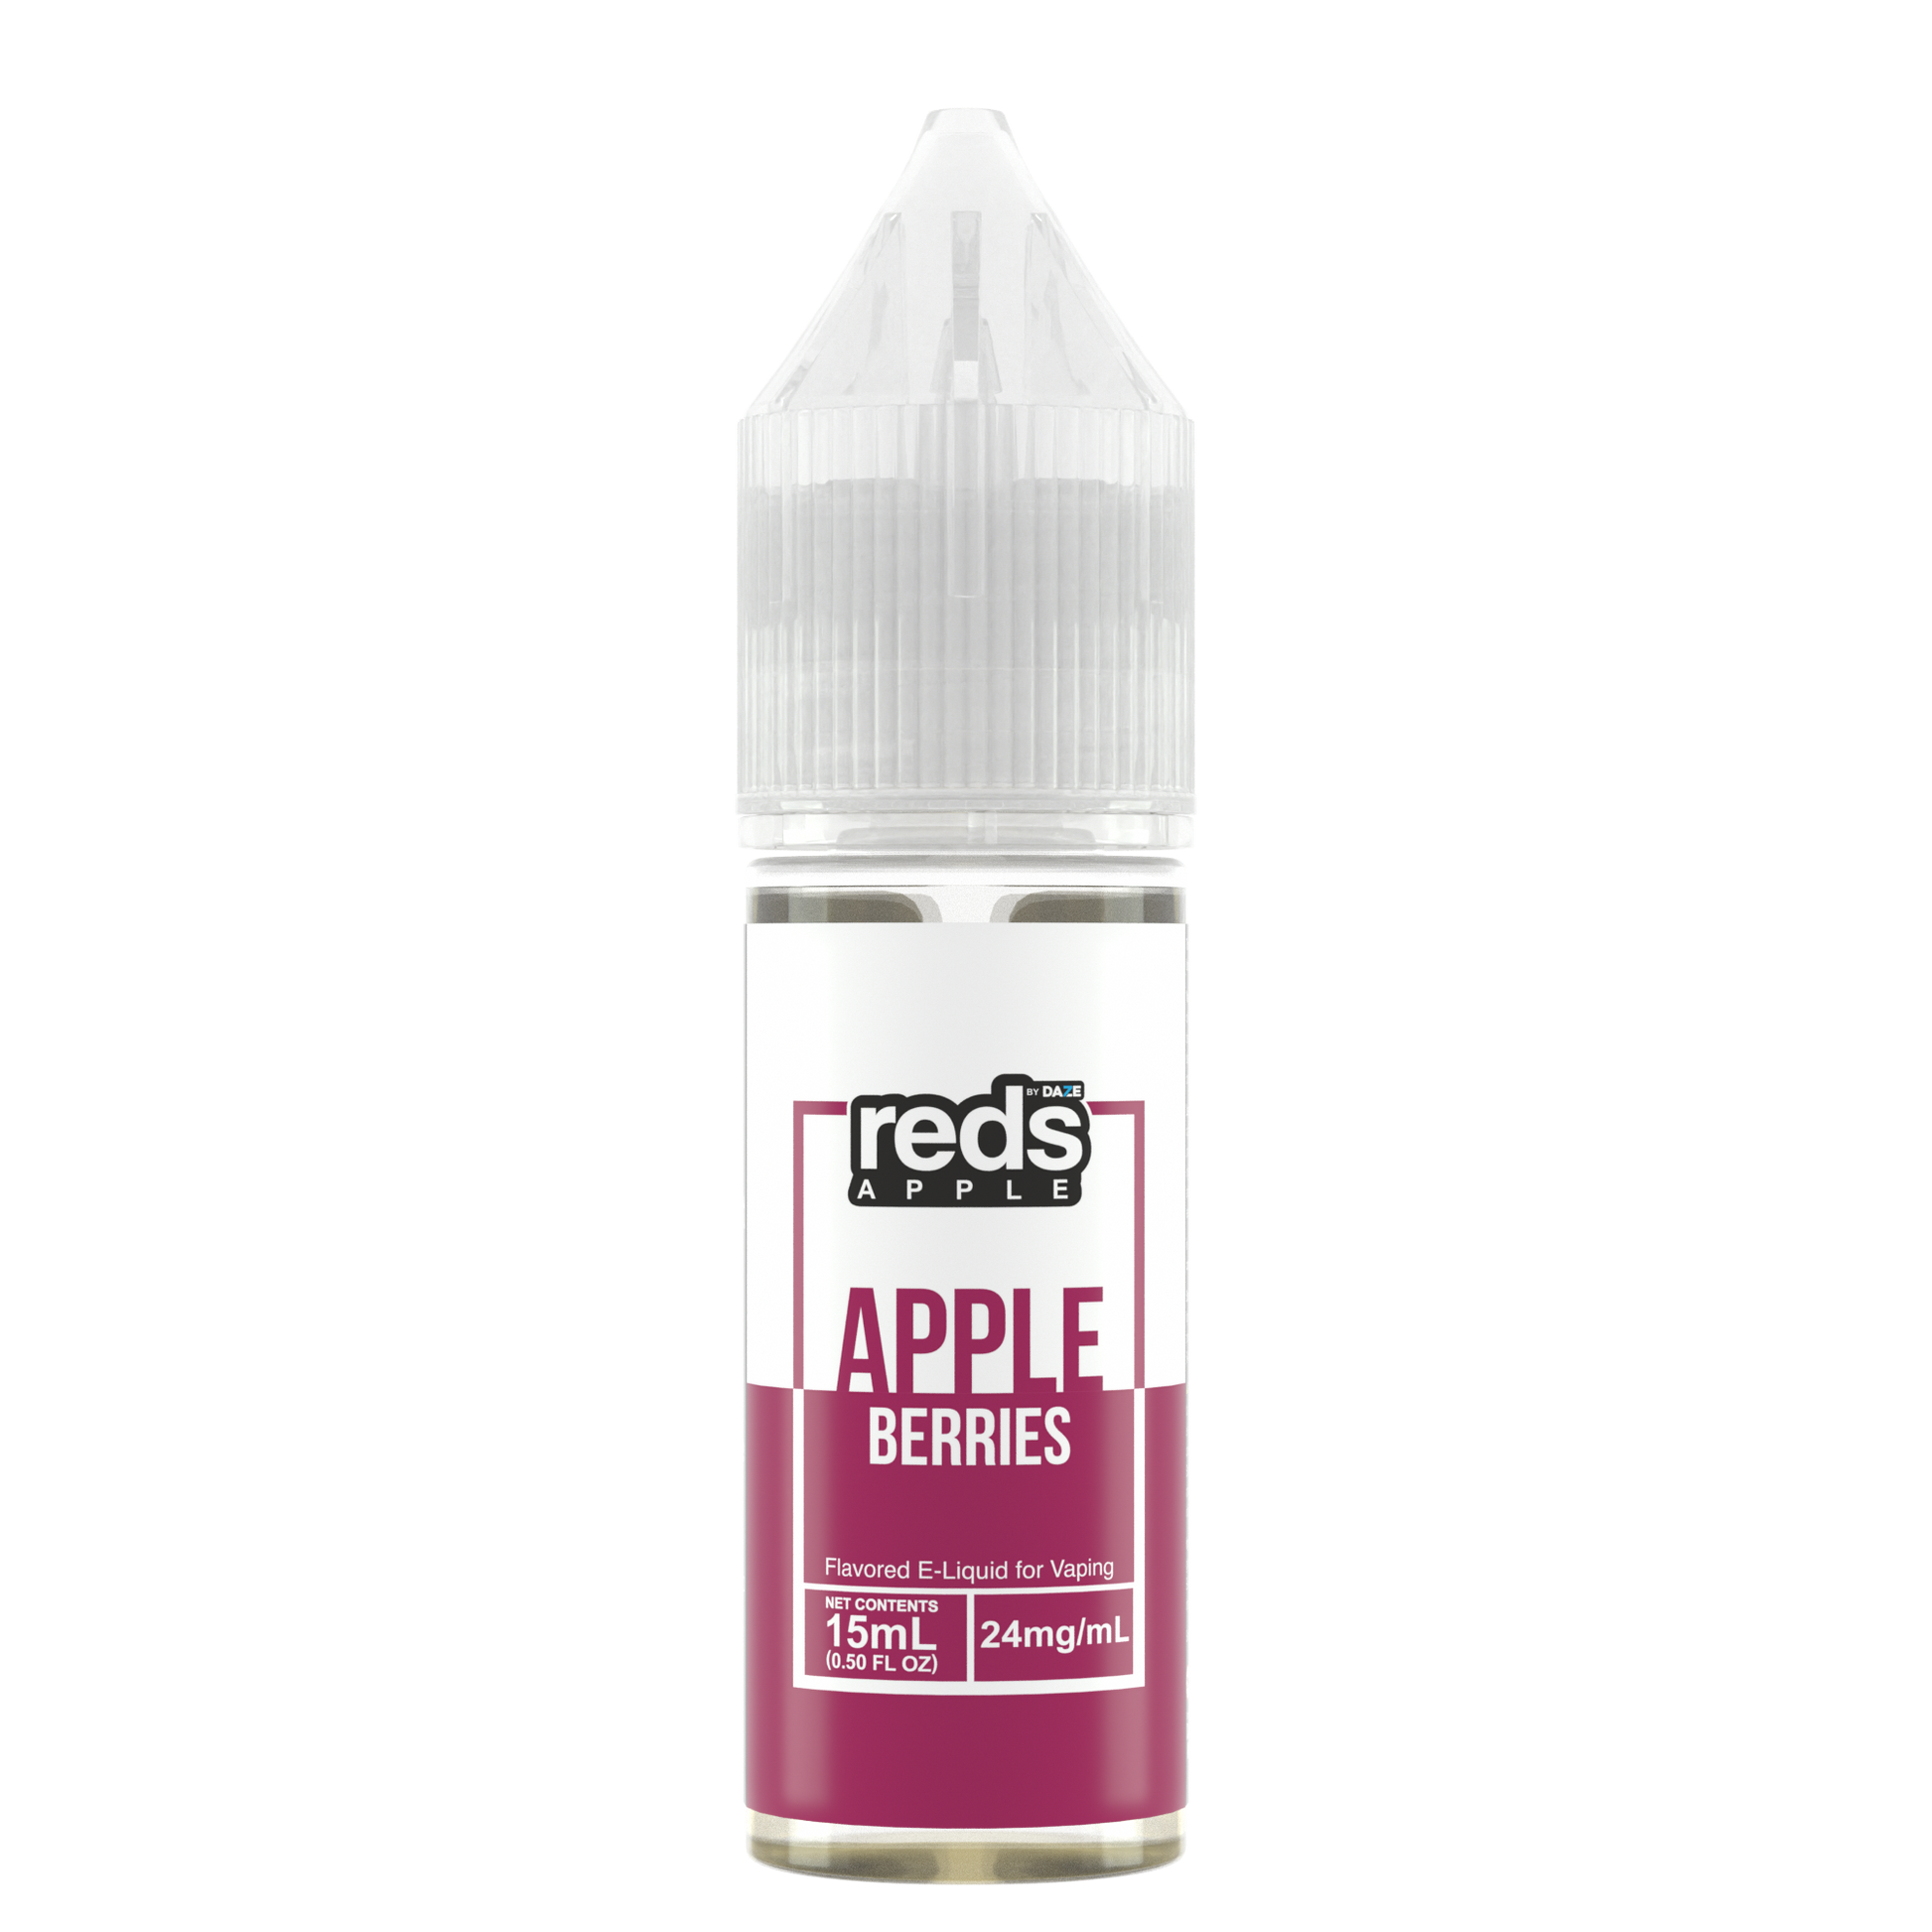 7Daze Reds Salt Series E-Liquid 15mL (Salt Nic) | Apple Berries